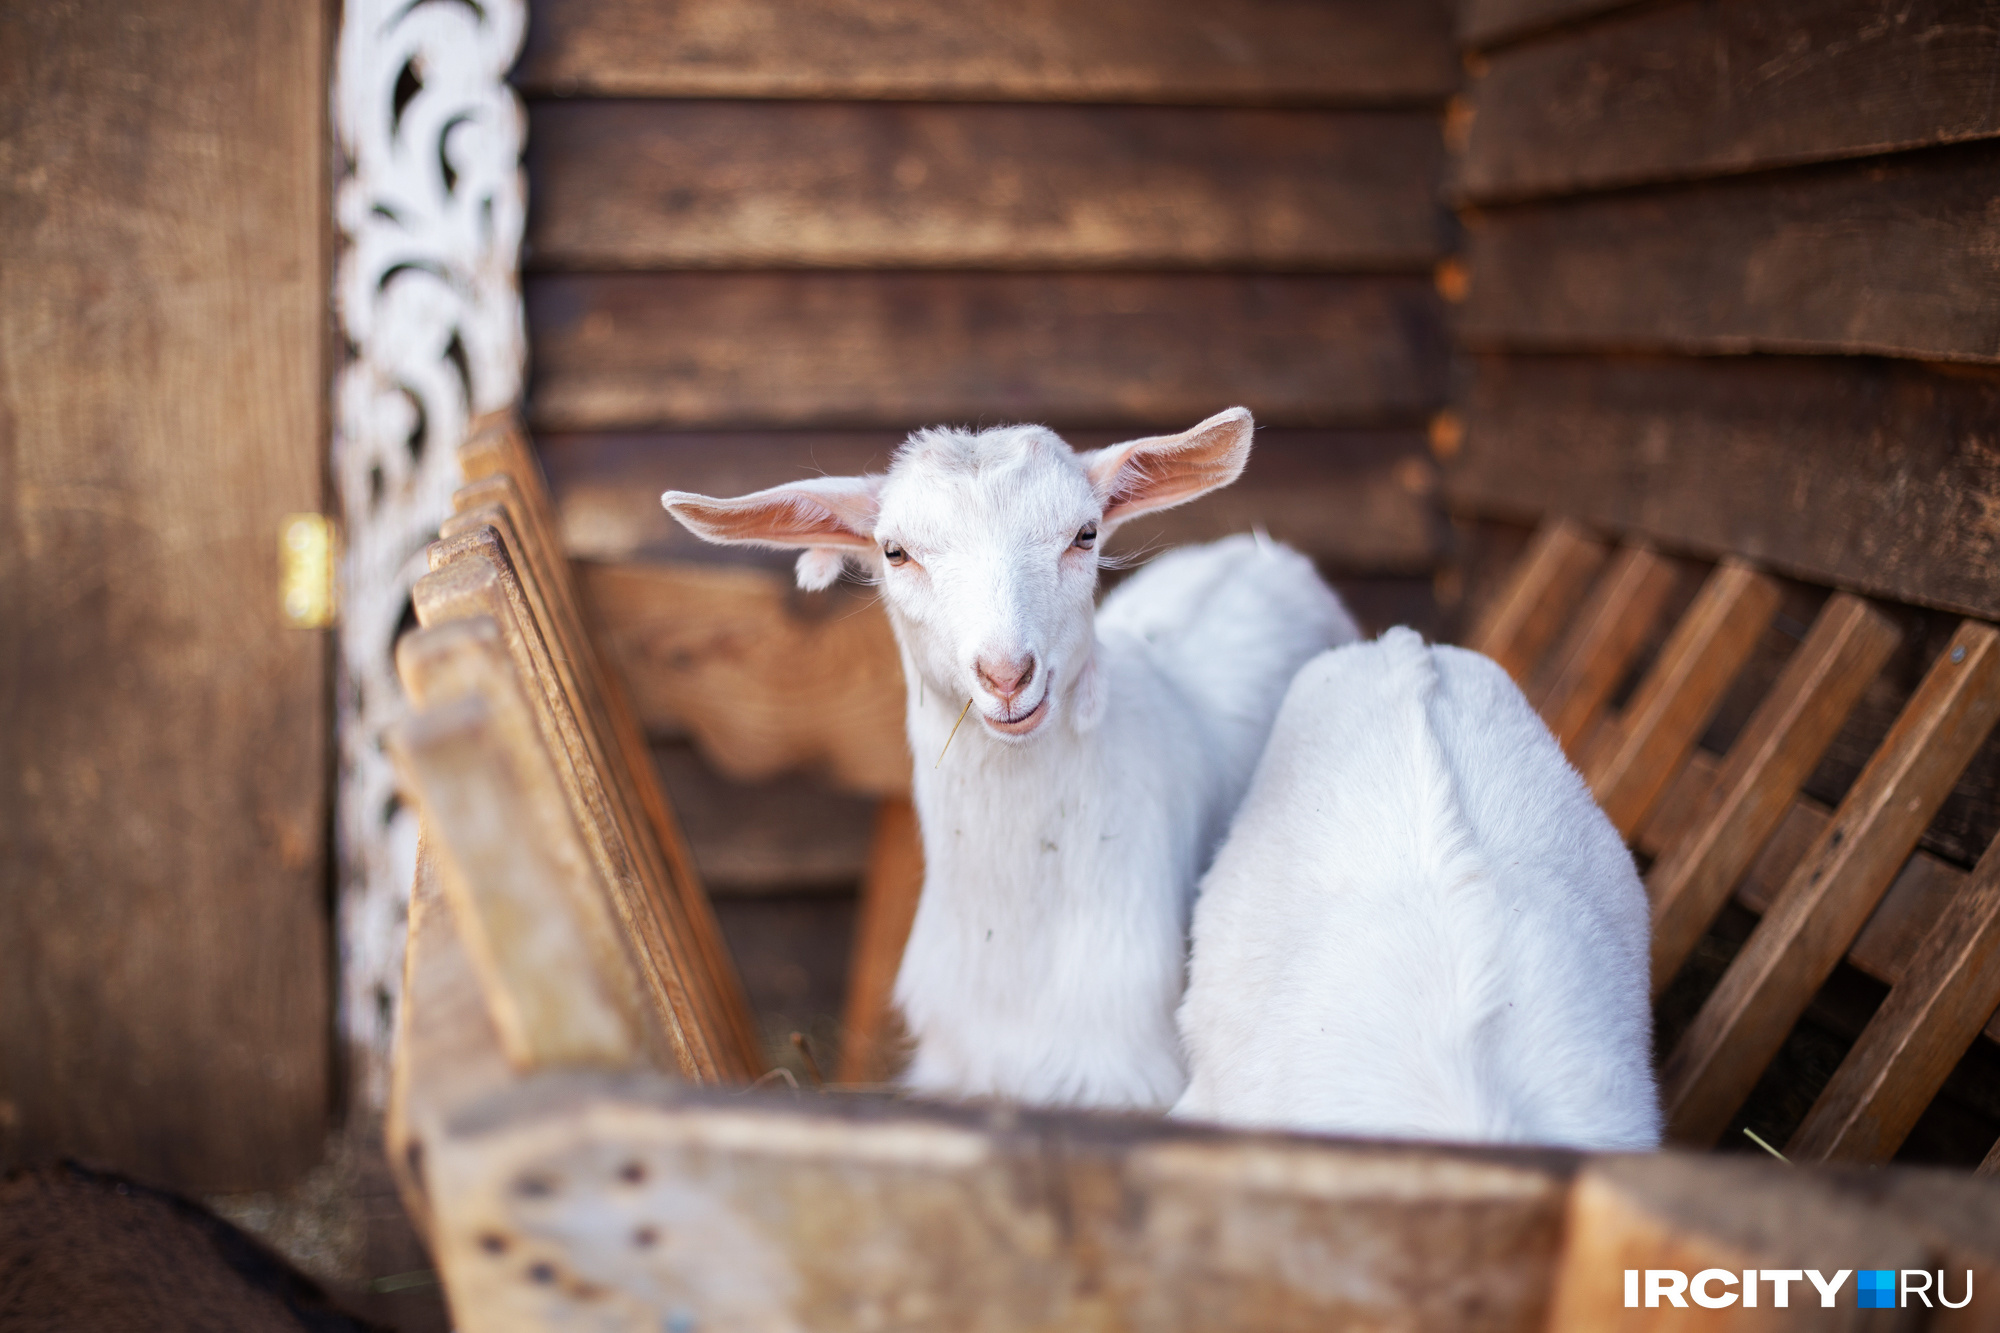 Иркутская зоогалерея показала, как козы хрустят яблочками. Посмотрите самое умиротворяющее видео недели